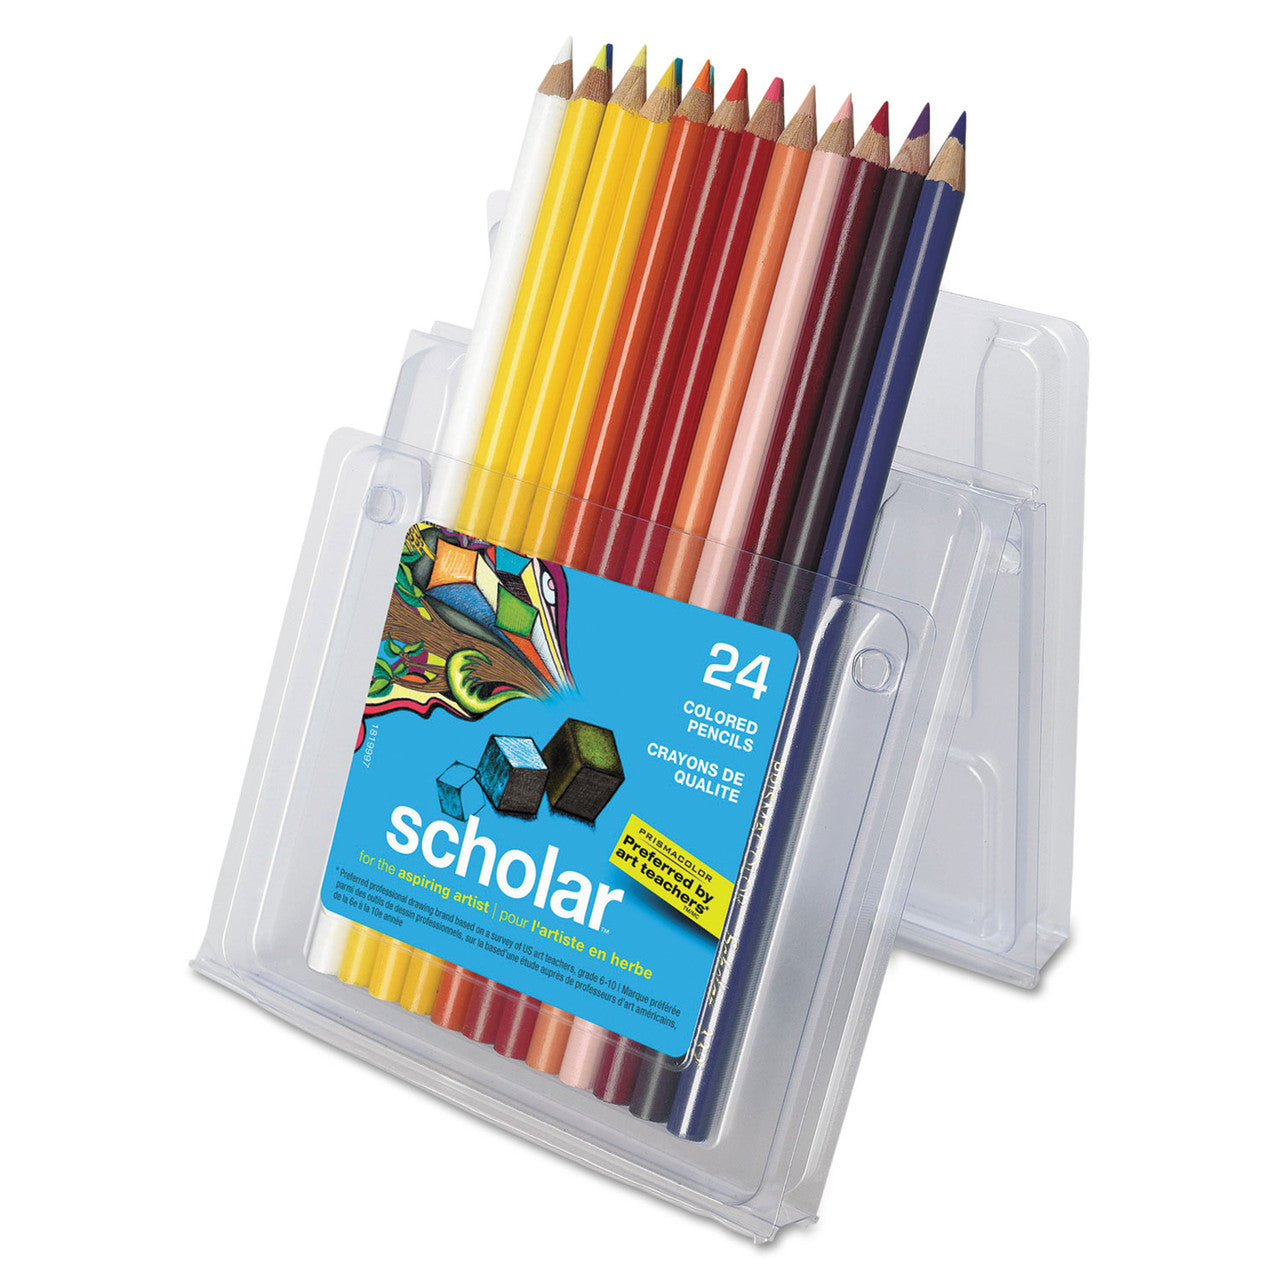 Prismacolor Scholar Colored Pencil Set